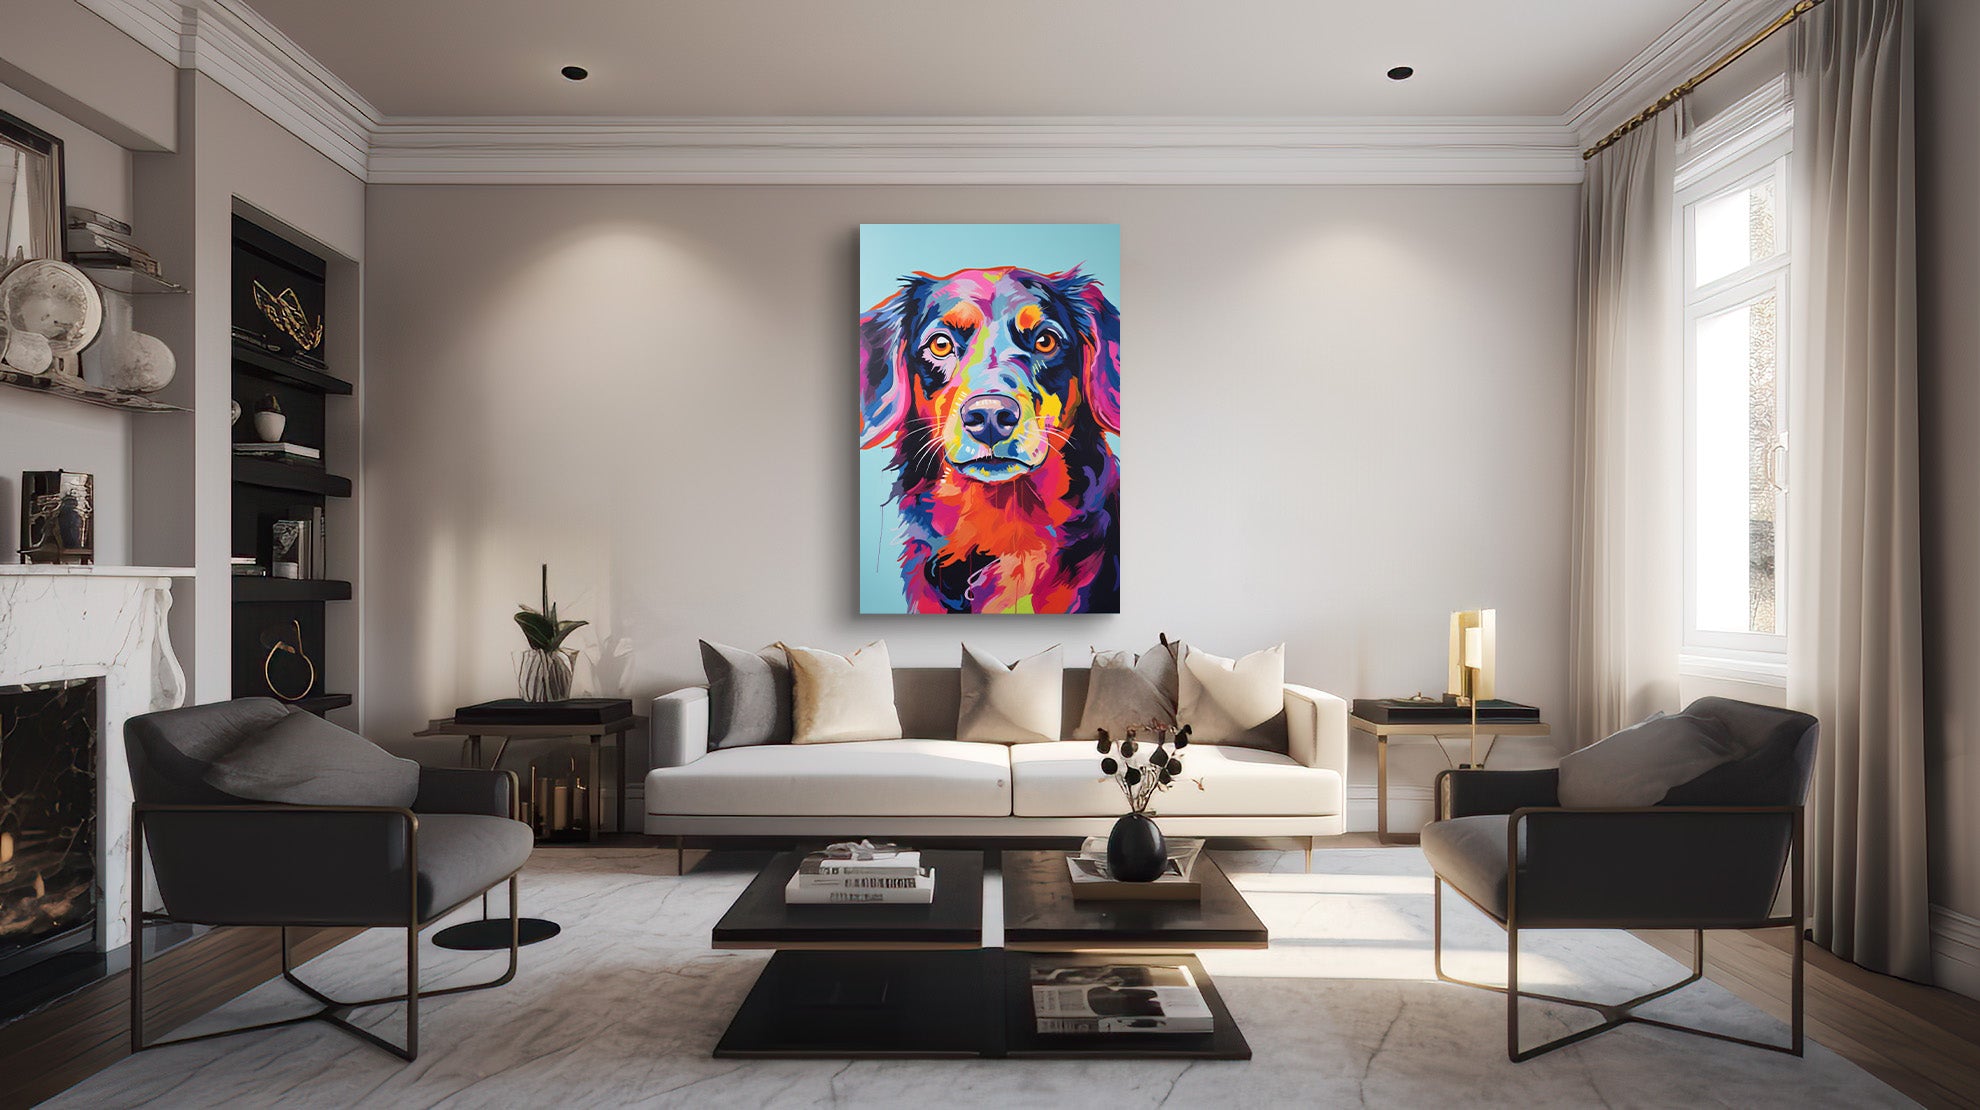 Kleurrijk Portret: Liefdevolle Blik van een Hond